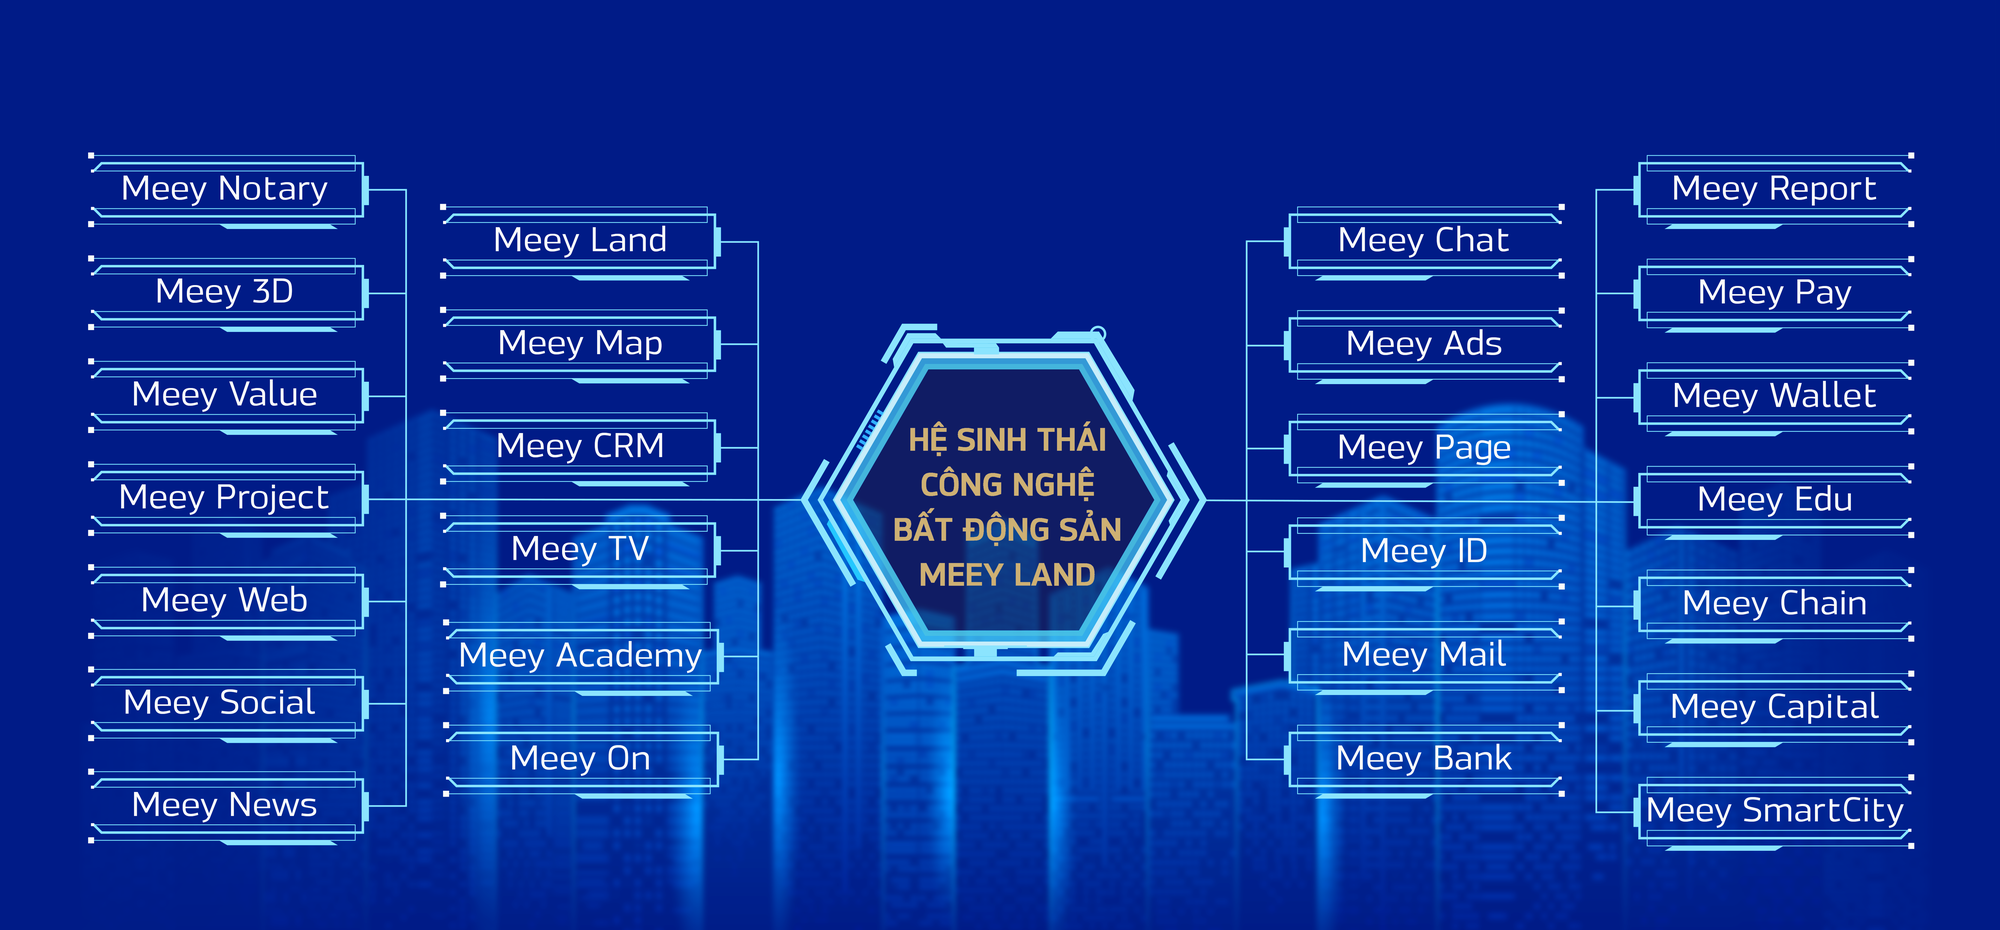 Meey Land tham gia diễn đàn Chuyển đổi số Việt Nam 2021 - Vietnam DX Summit 2021 - Ảnh 1.